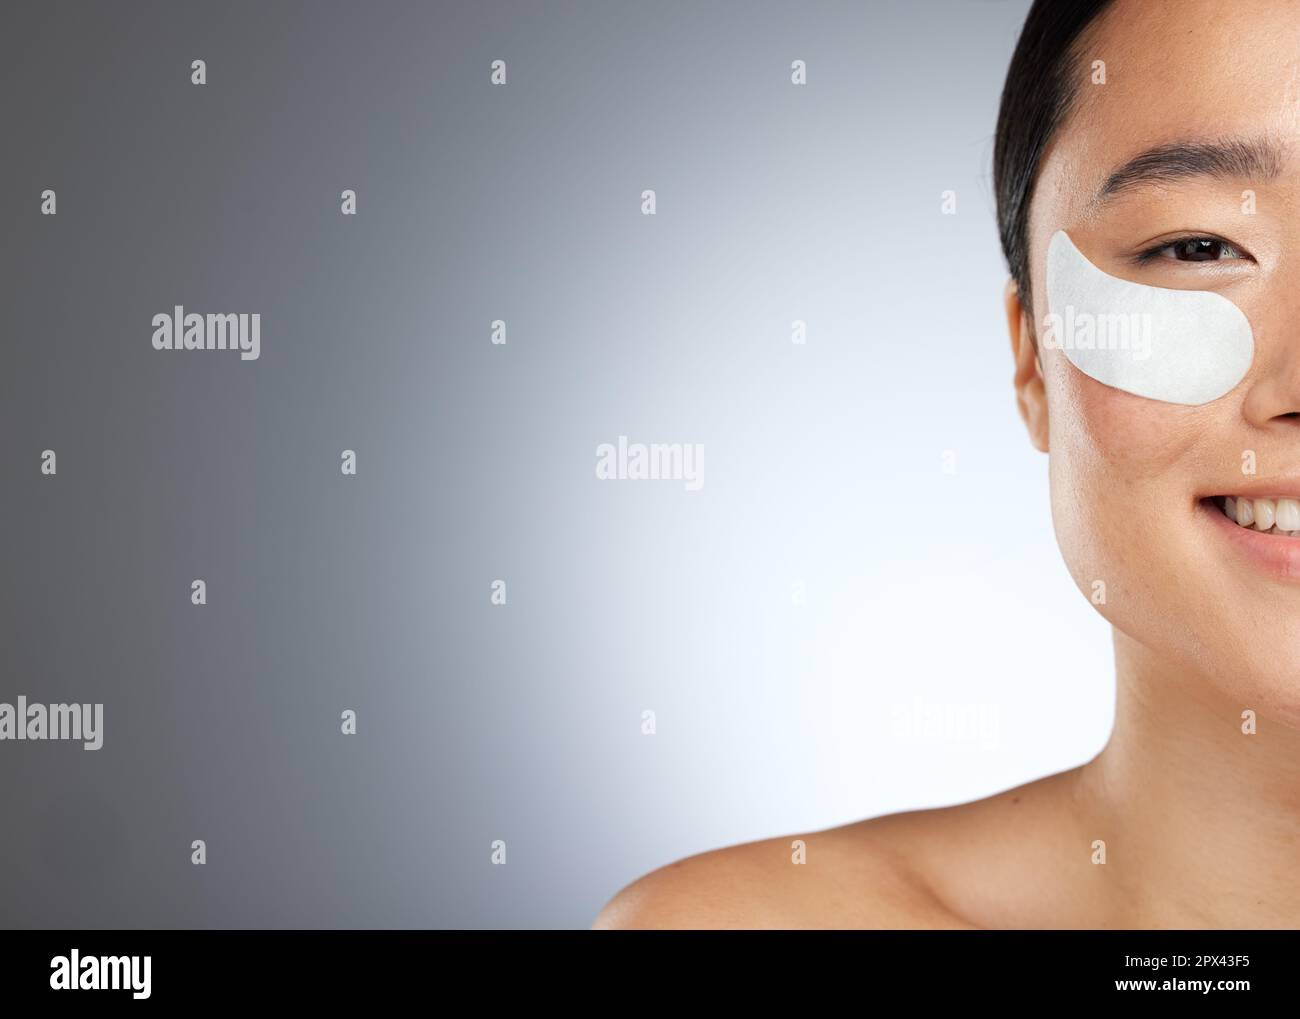 Beauté, masque d'oeil et collagène soin de la peau portrait de femme heureux au sujet de la santé, le bien-être et la dermatologie studio mockup arrière-plan. Modèle asiatique fille avec Banque D'Images